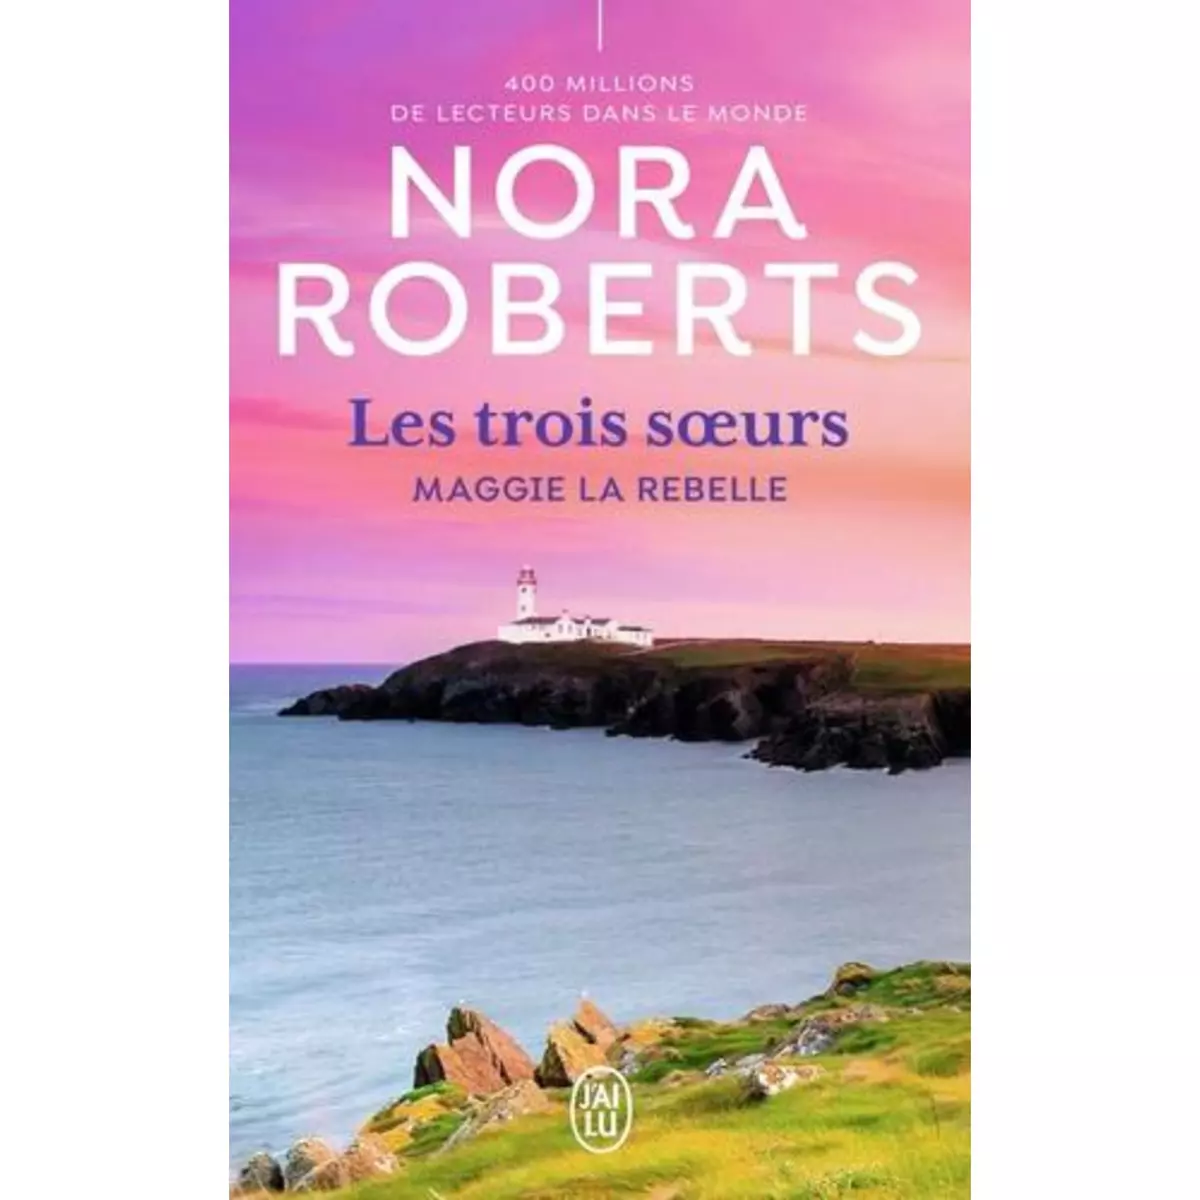  LES TROIS SOEURS TOME 1 : MAGGIE LA REBELLE, Roberts Nora